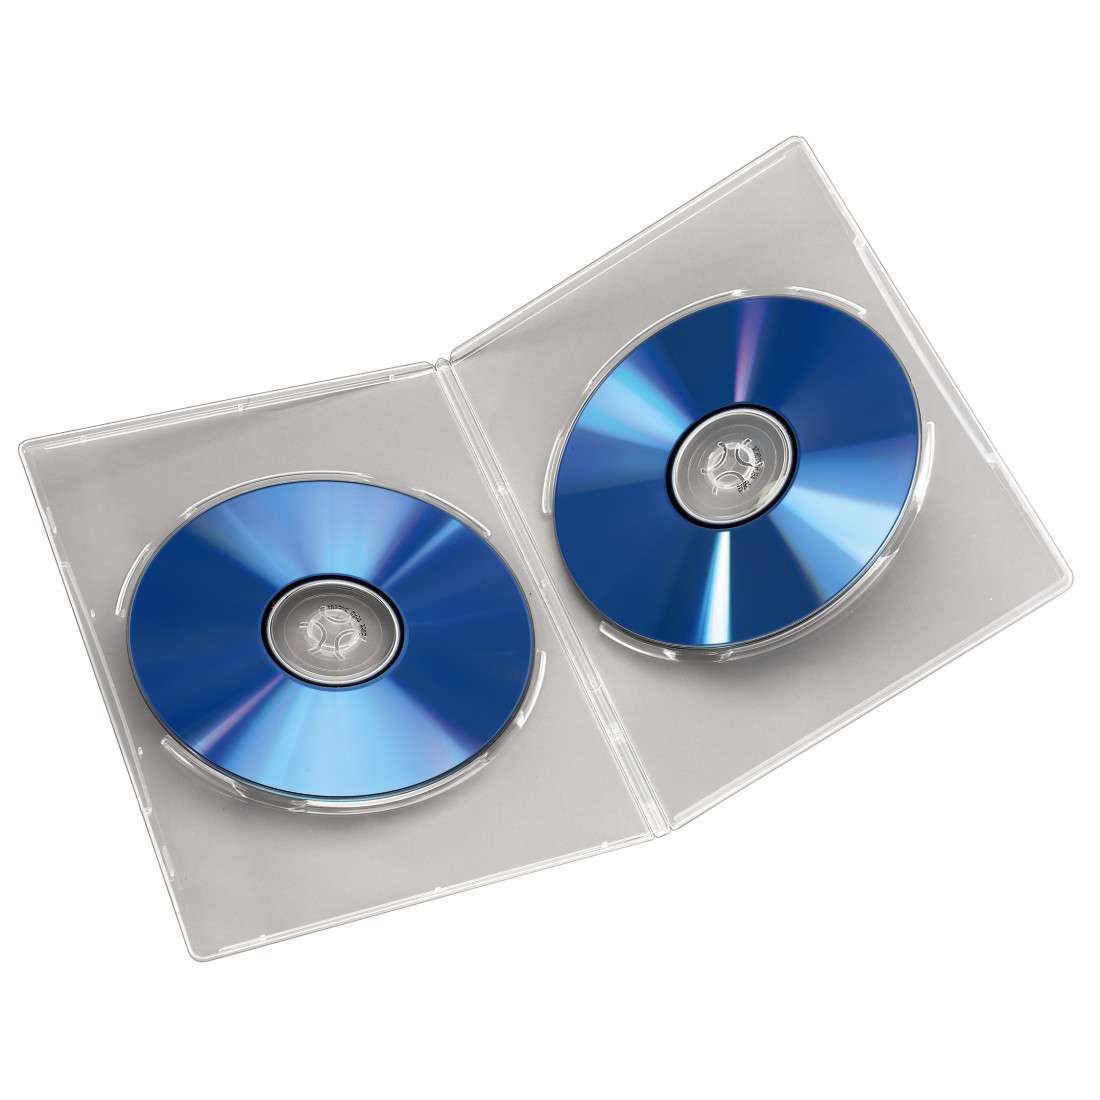 DVD-Doppel-Leerhülle Slim, 5er-Pack, Transparent